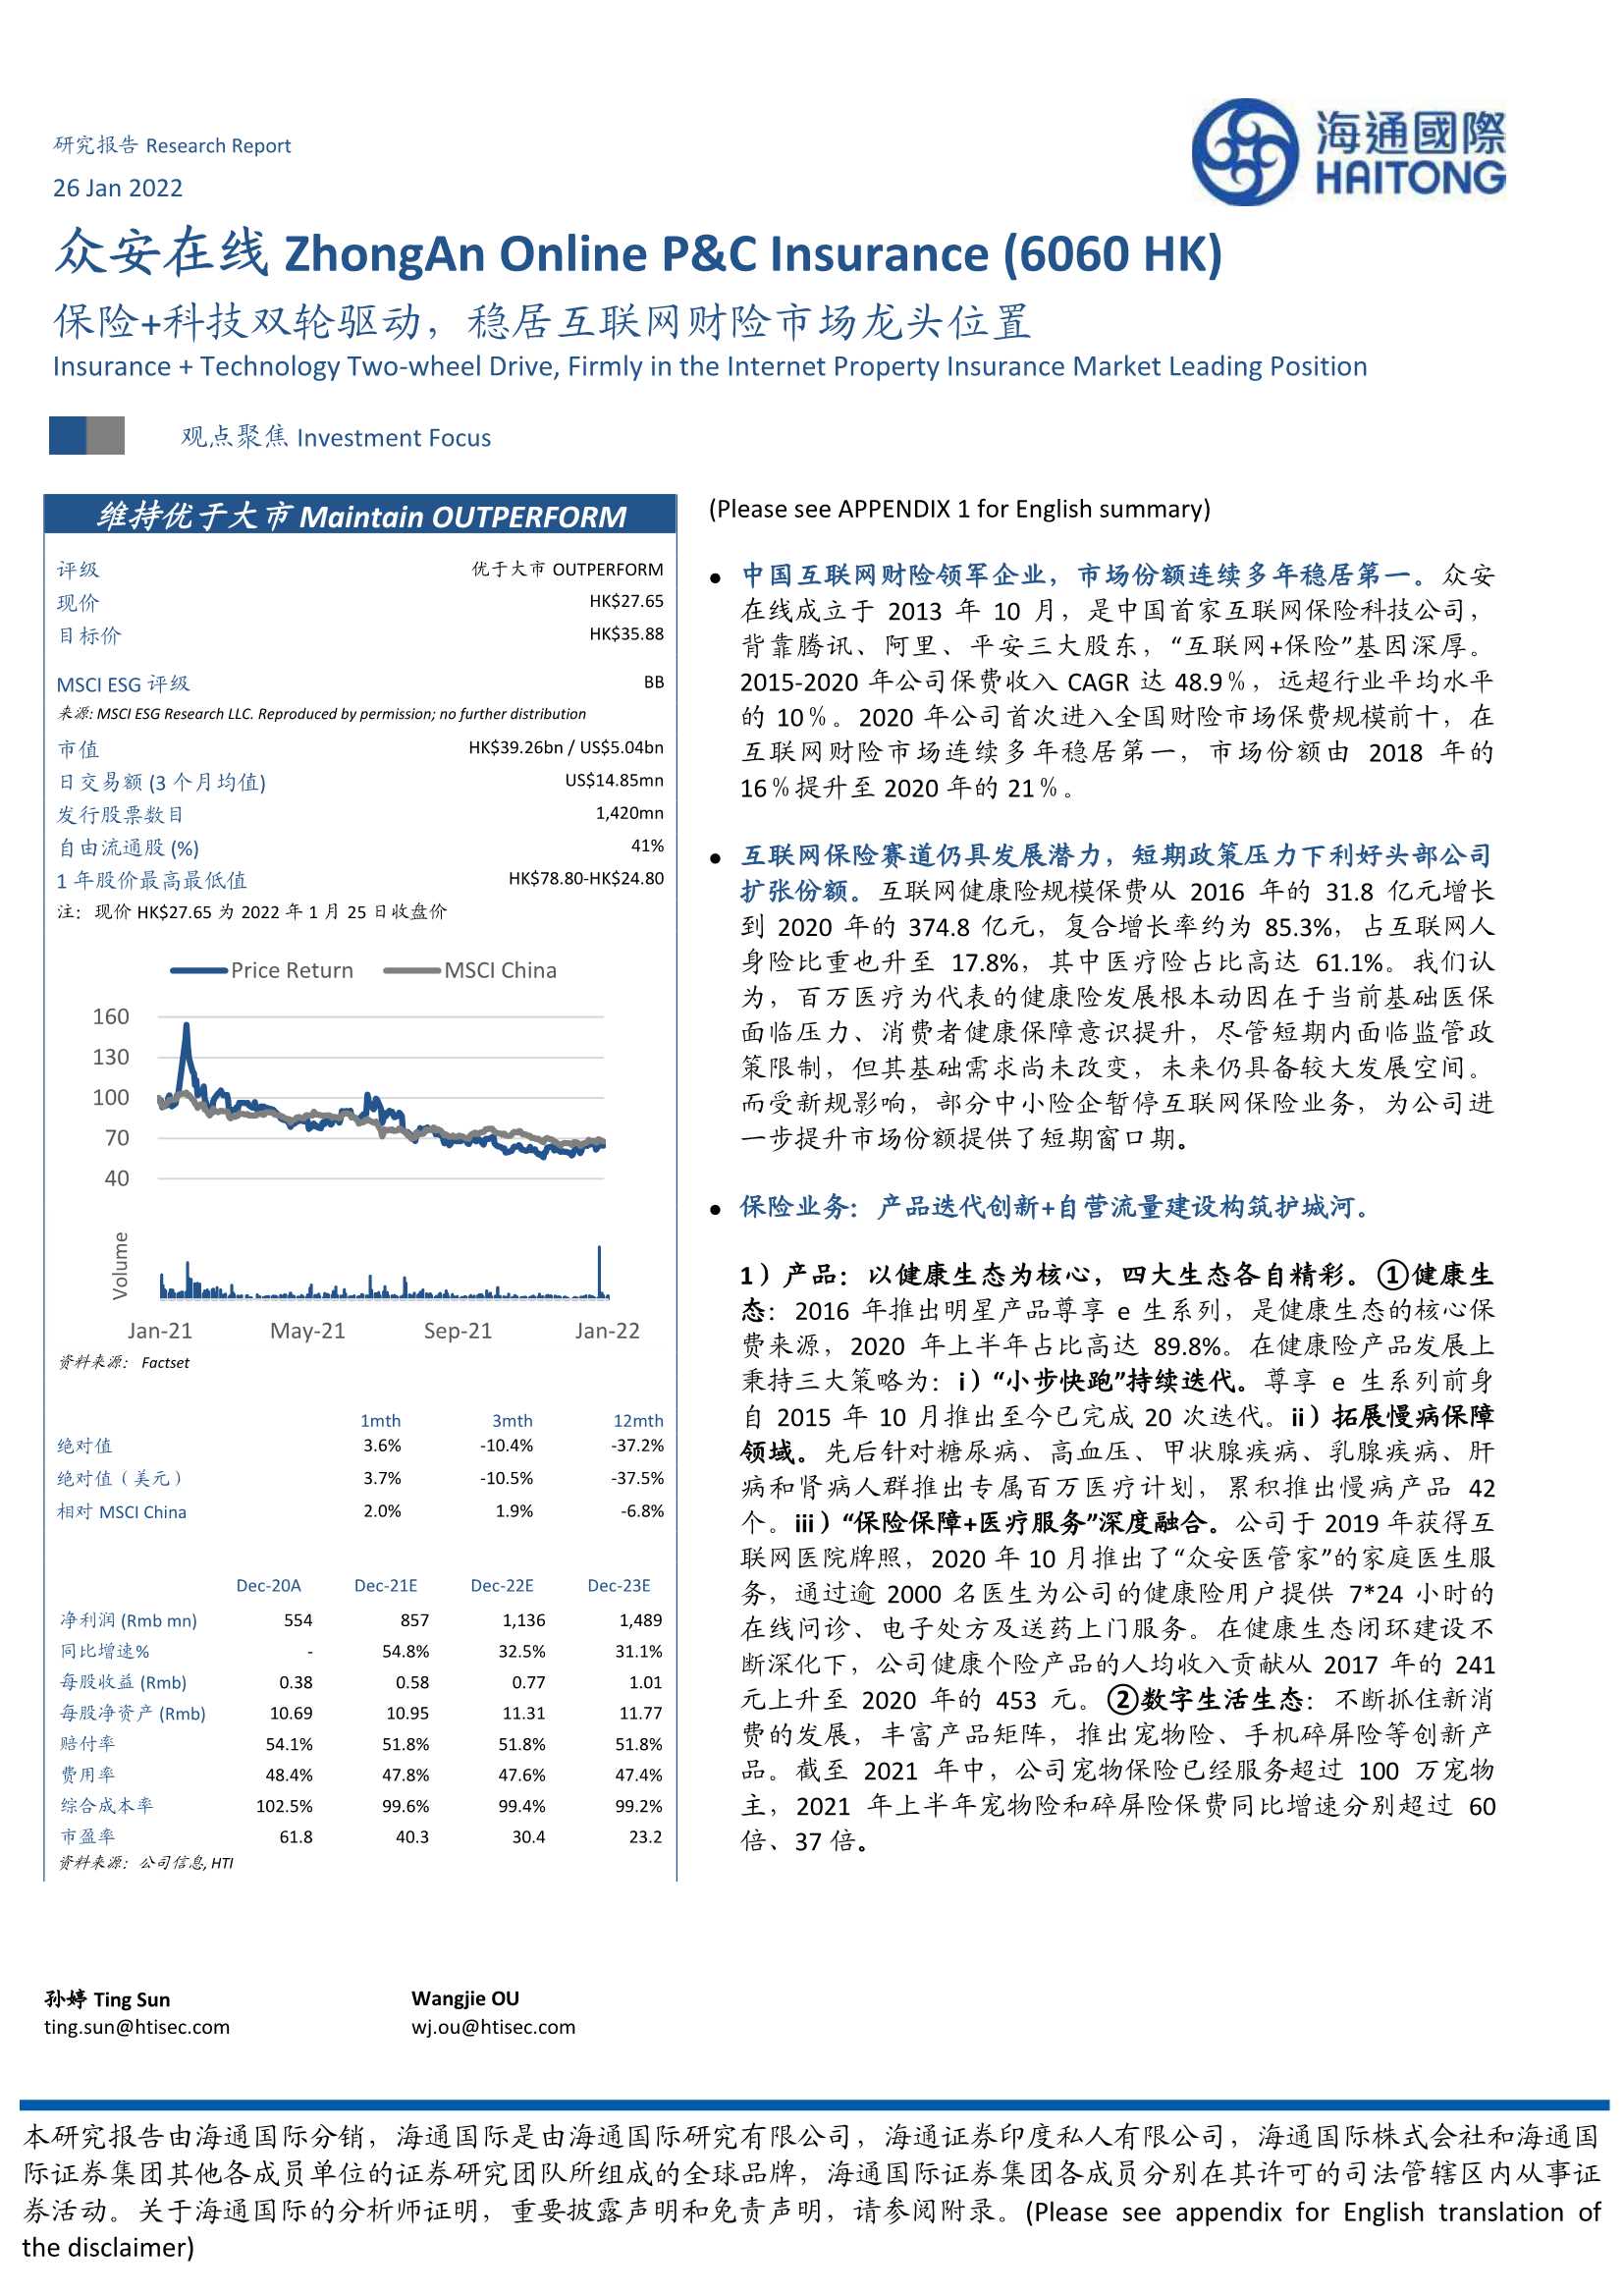 海通国际-众安在线-6060.HK-保险 科技双轮驱动，稳居互联网财险市场龙头位置-20220126-43页